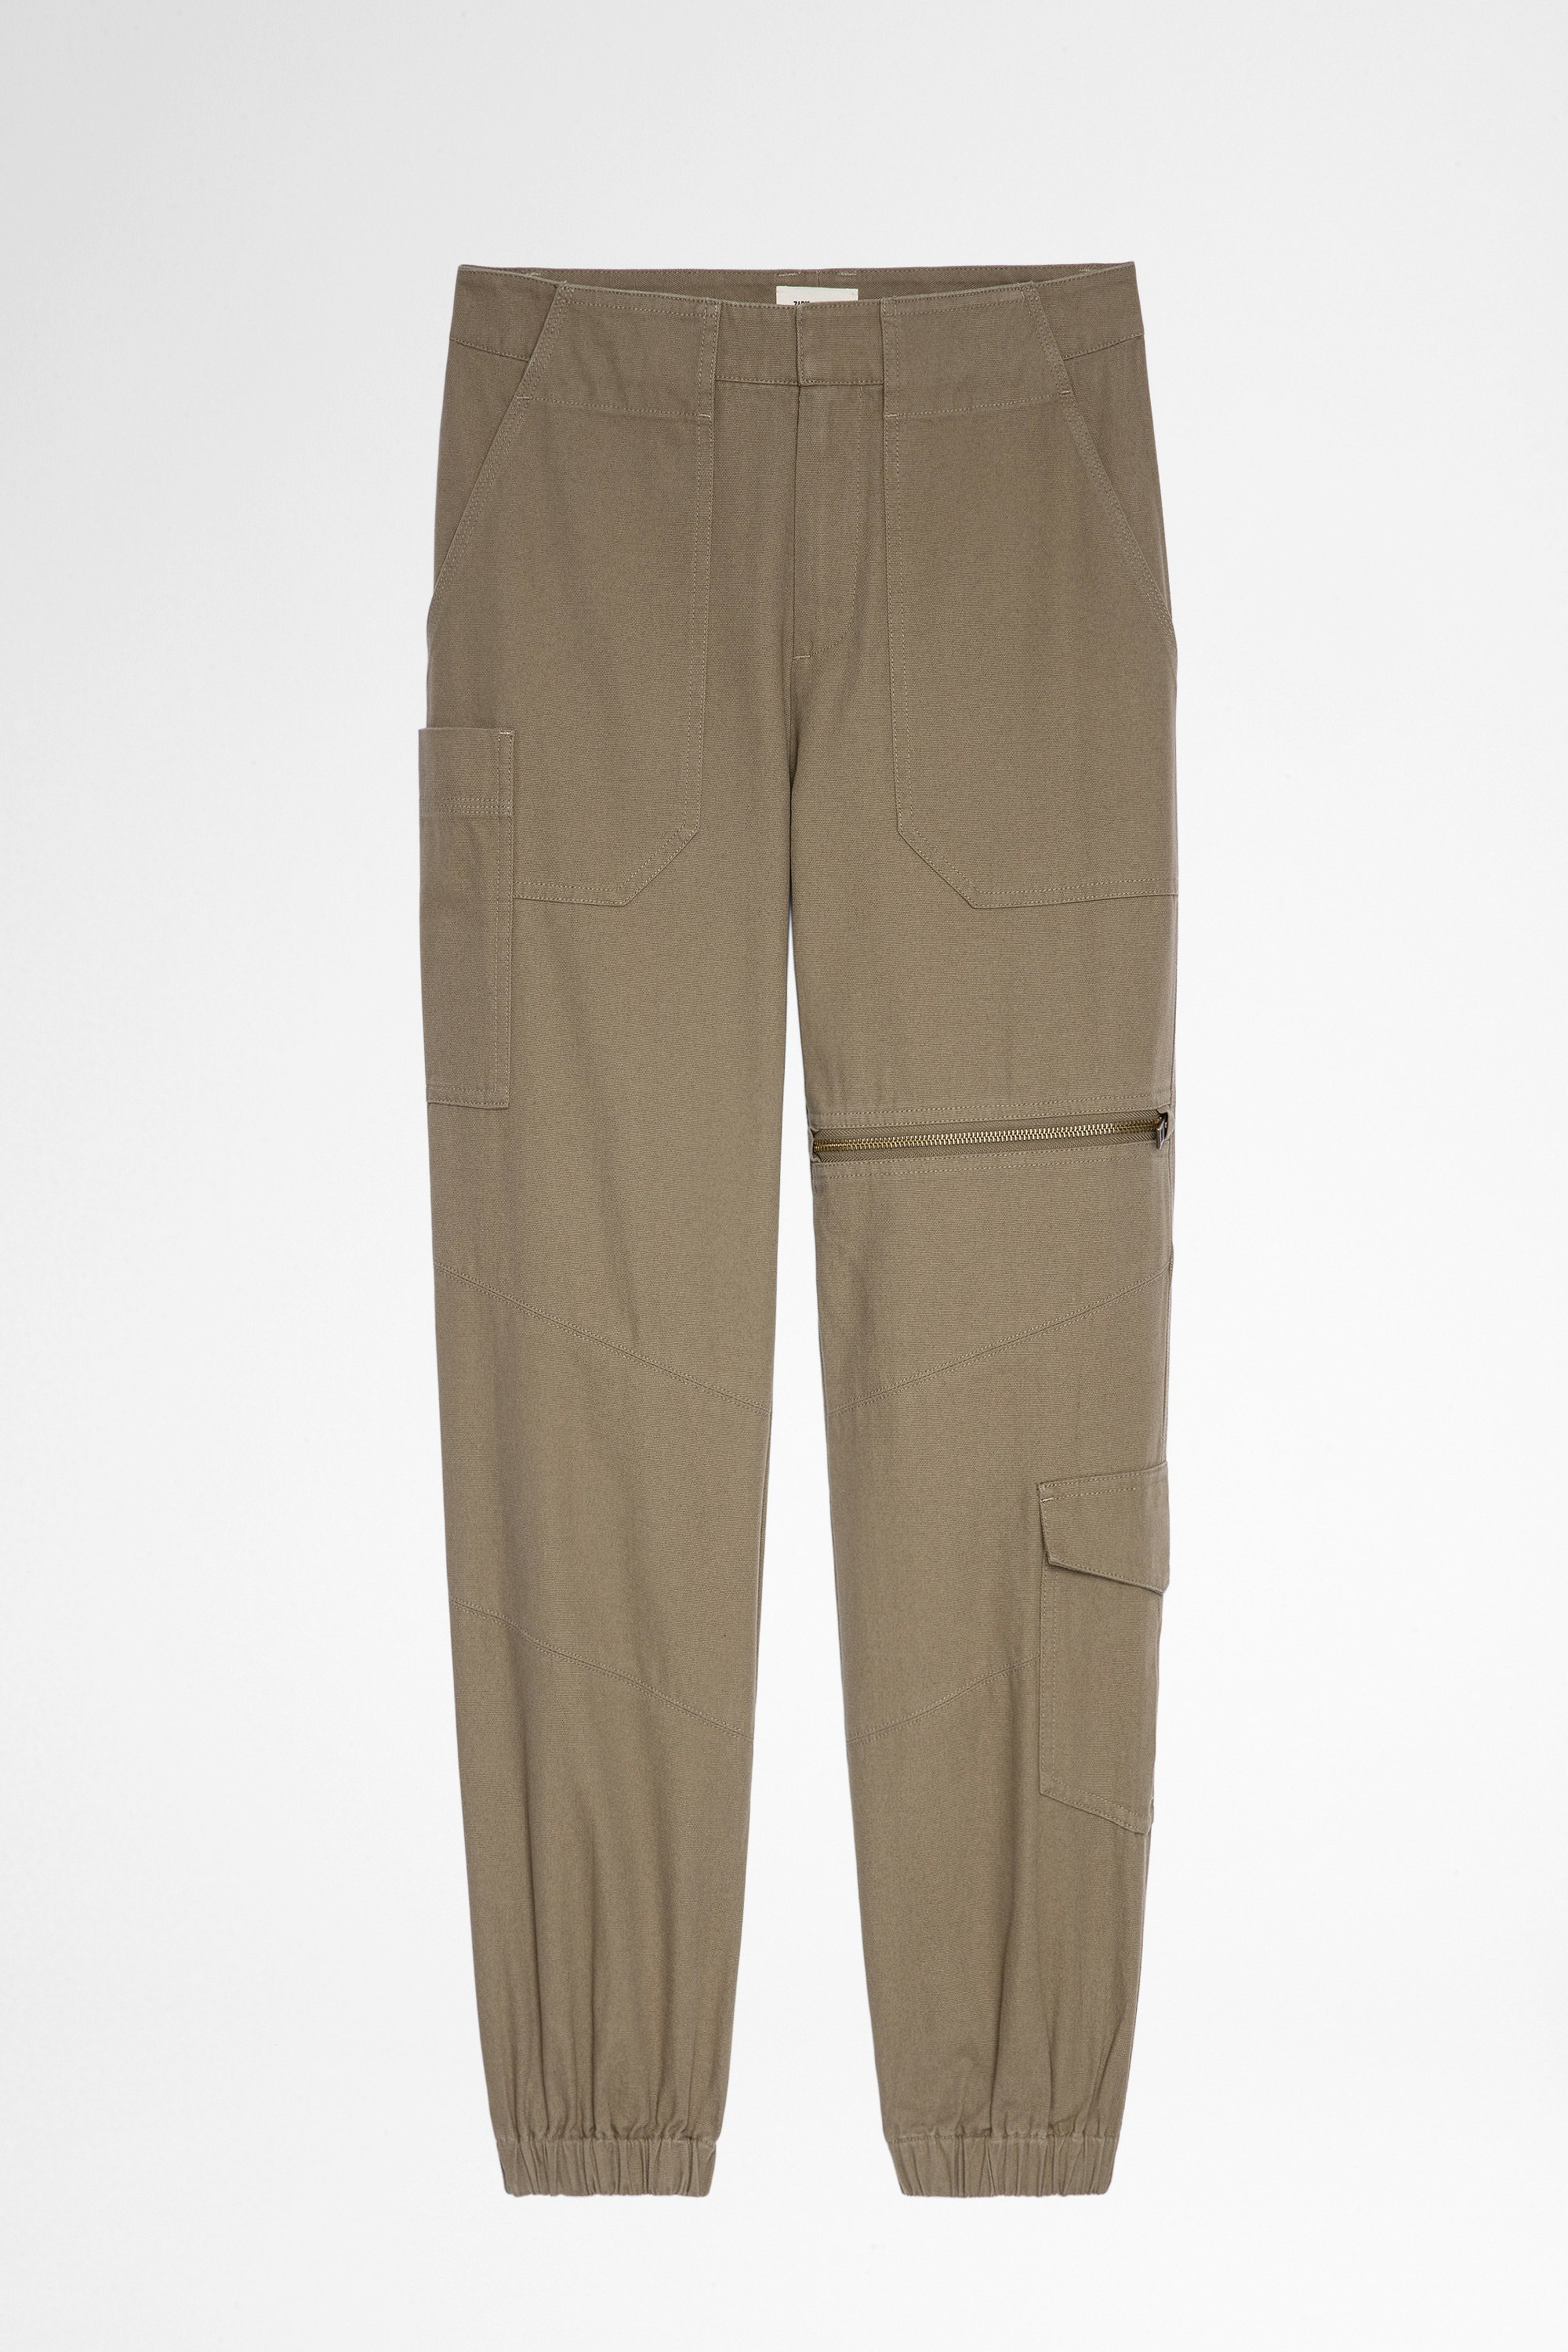 Pantalon Poder Pantalon militaire kaki Femme. Fait avec des fibres issues de l’agriculture biologique